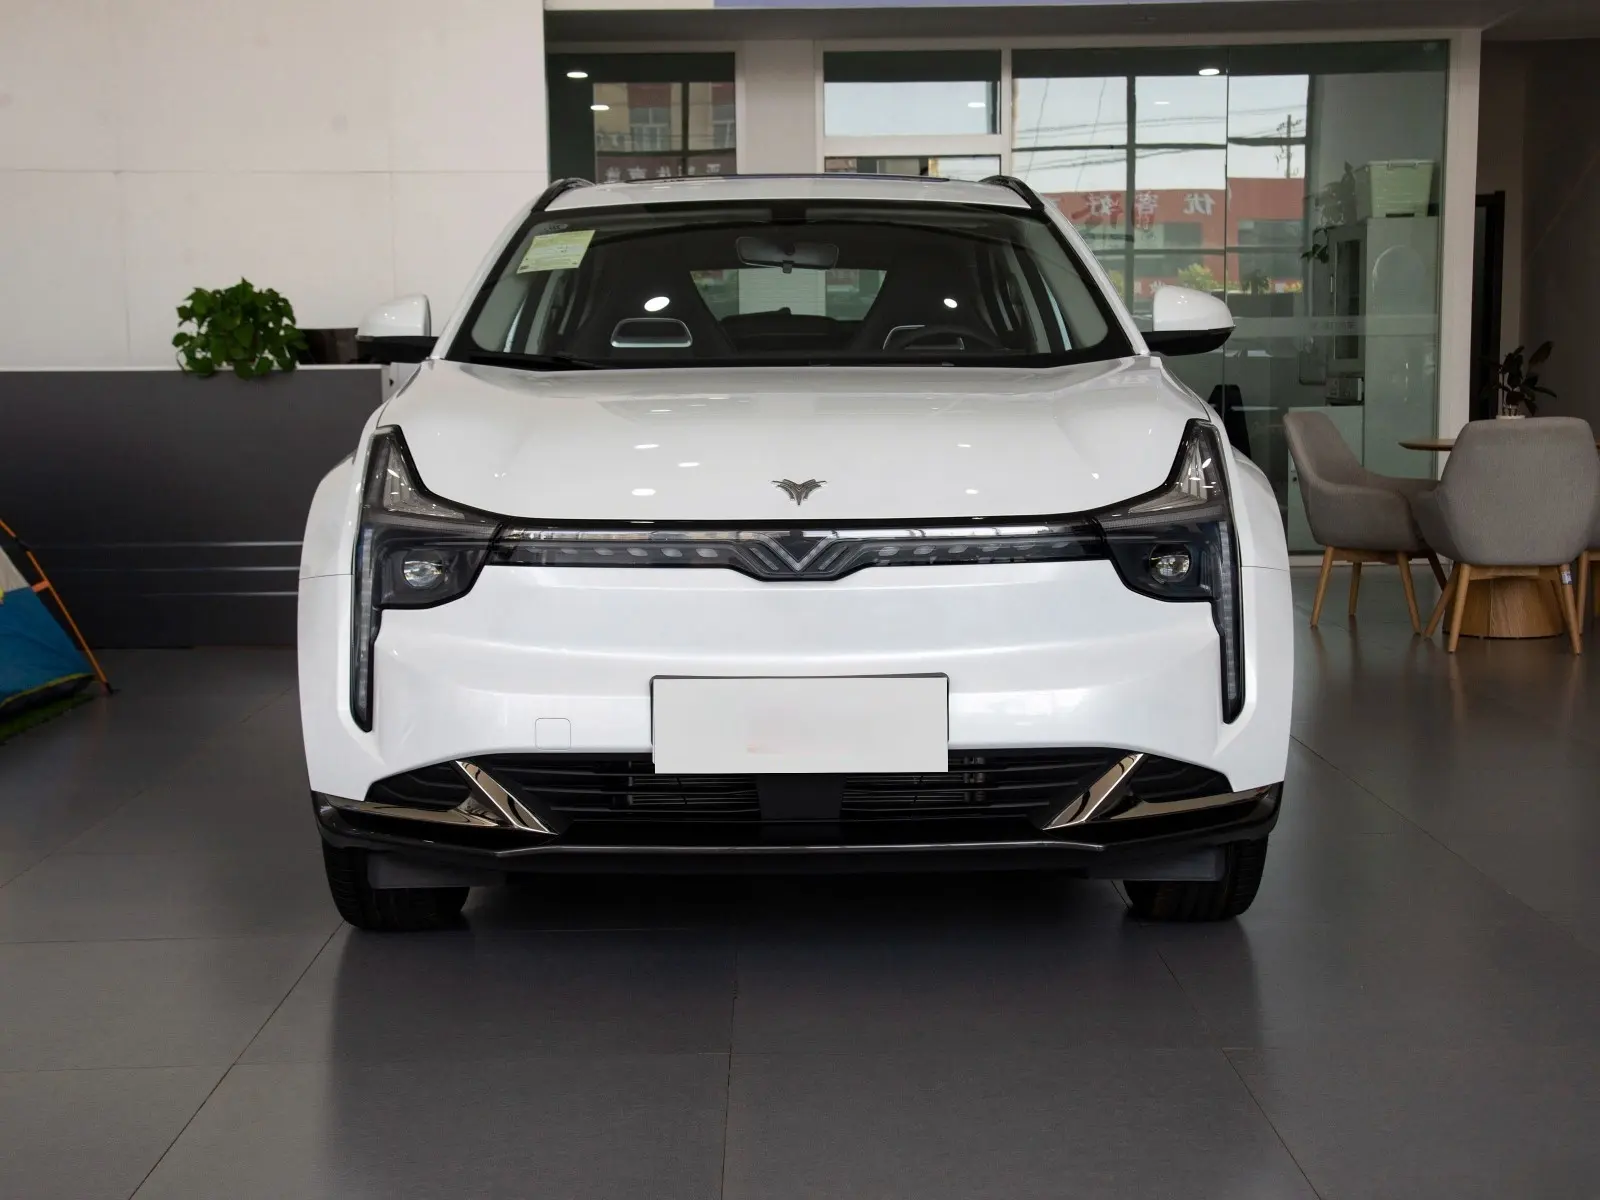 유나이티드 모터스 네자 혁신적인 신에너지 자동차 유나이티드 모터스 네자 혁신적인 신에너지 자동차